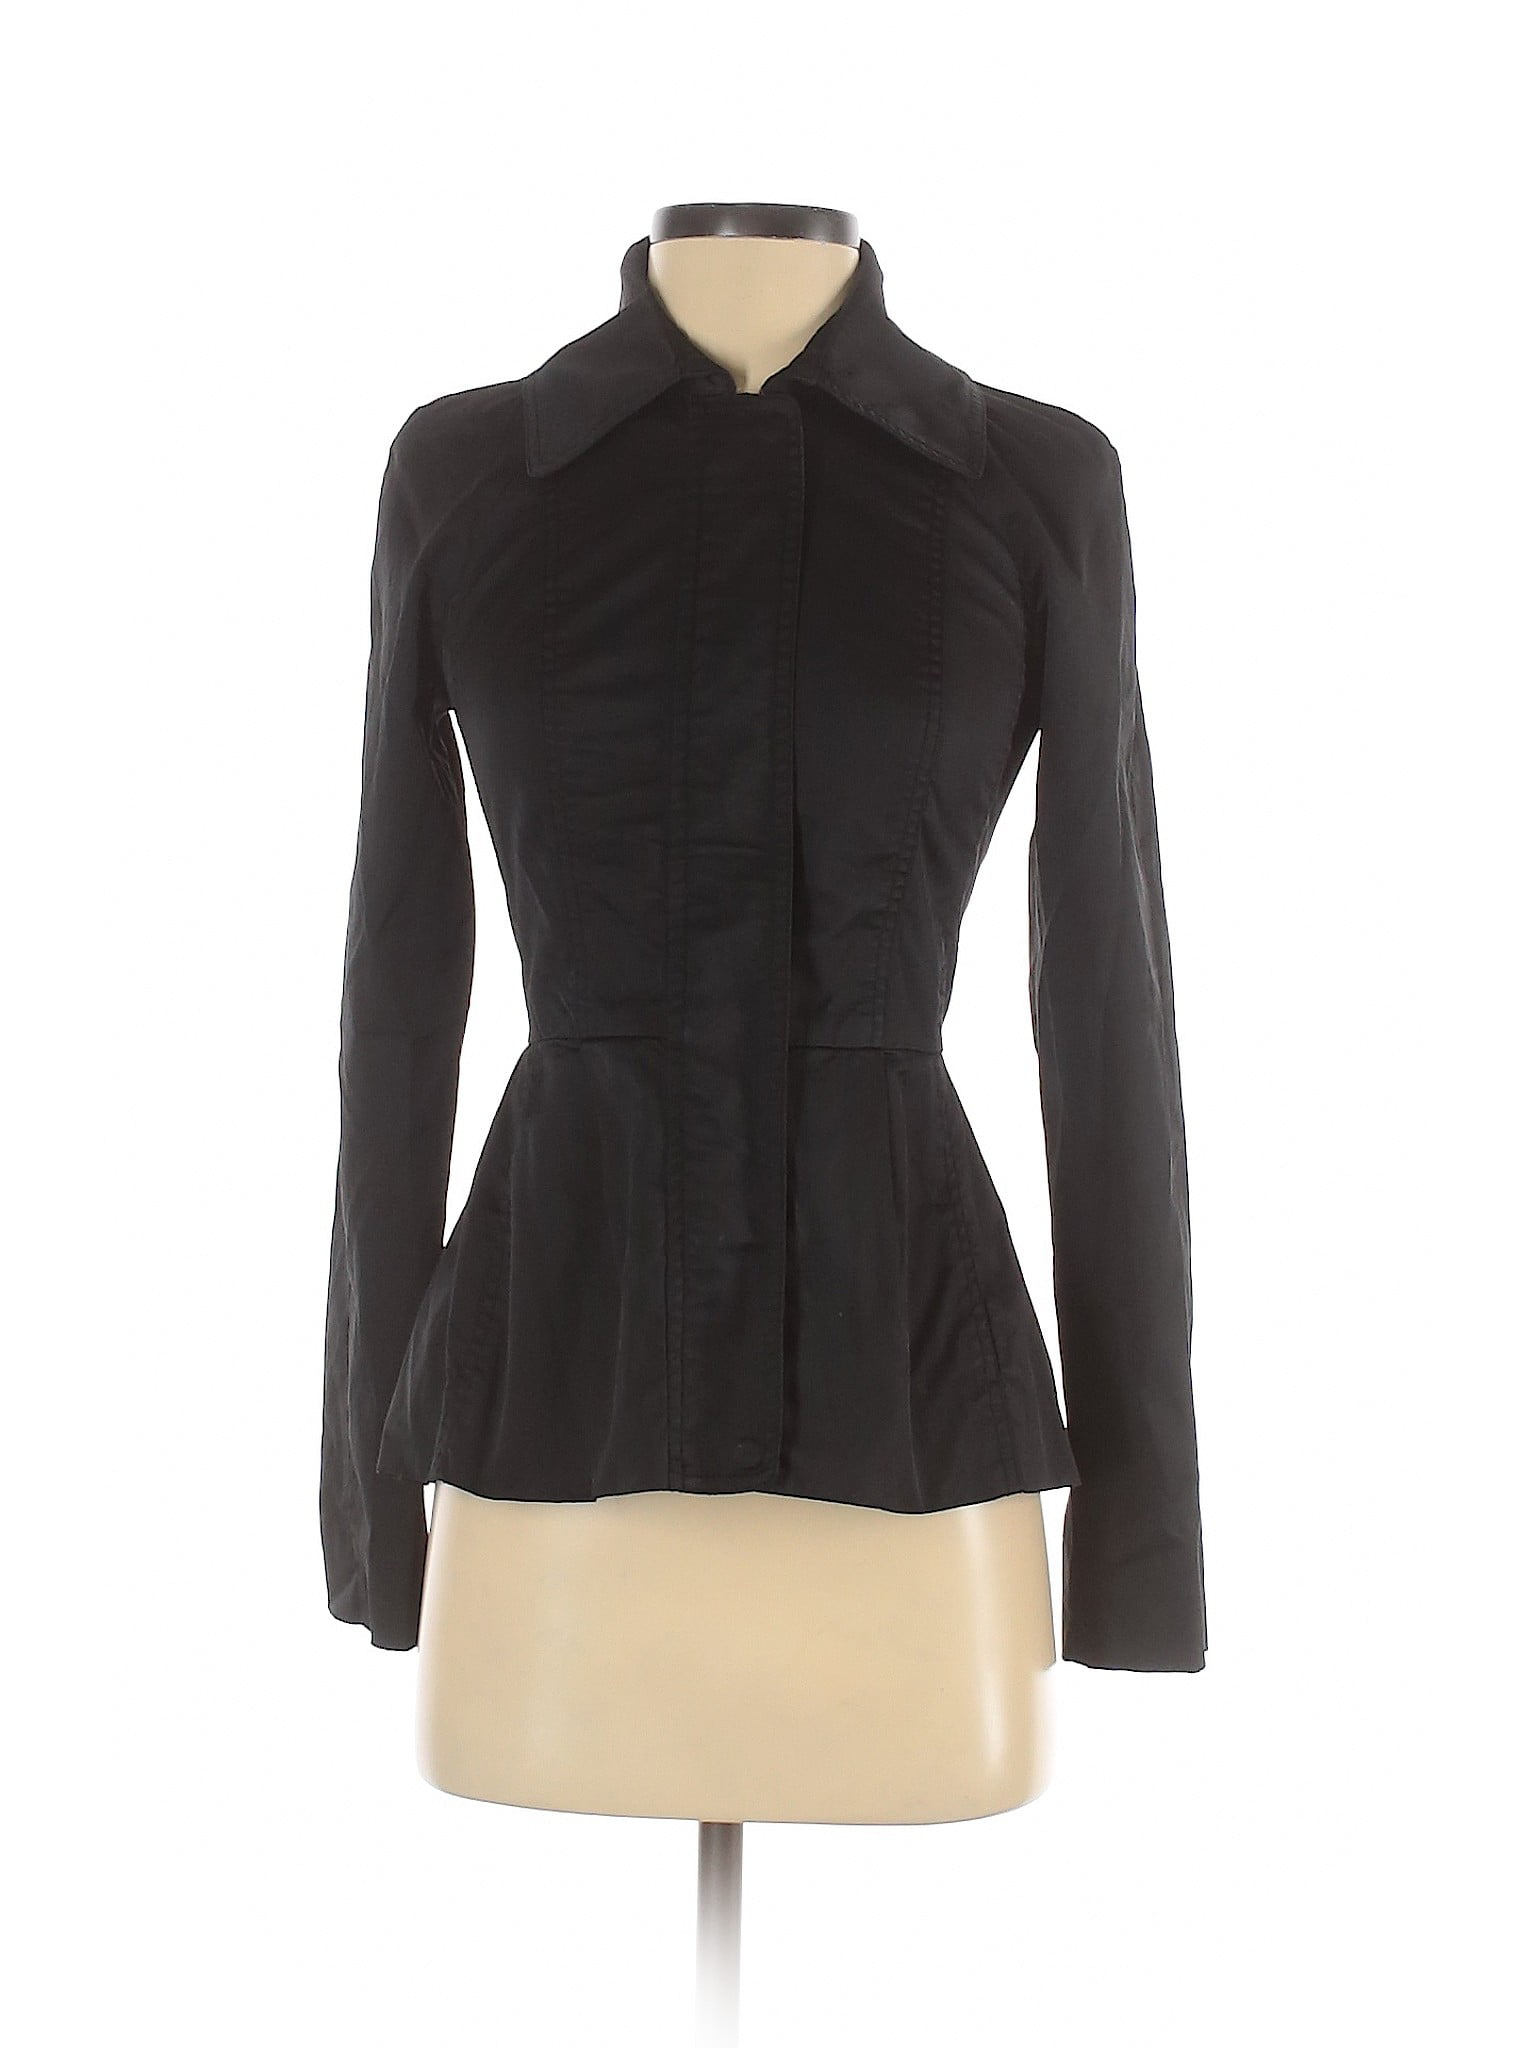 Armani Exchange - Pre-Owned Armani Exchange Women's Size XS Jacket ...